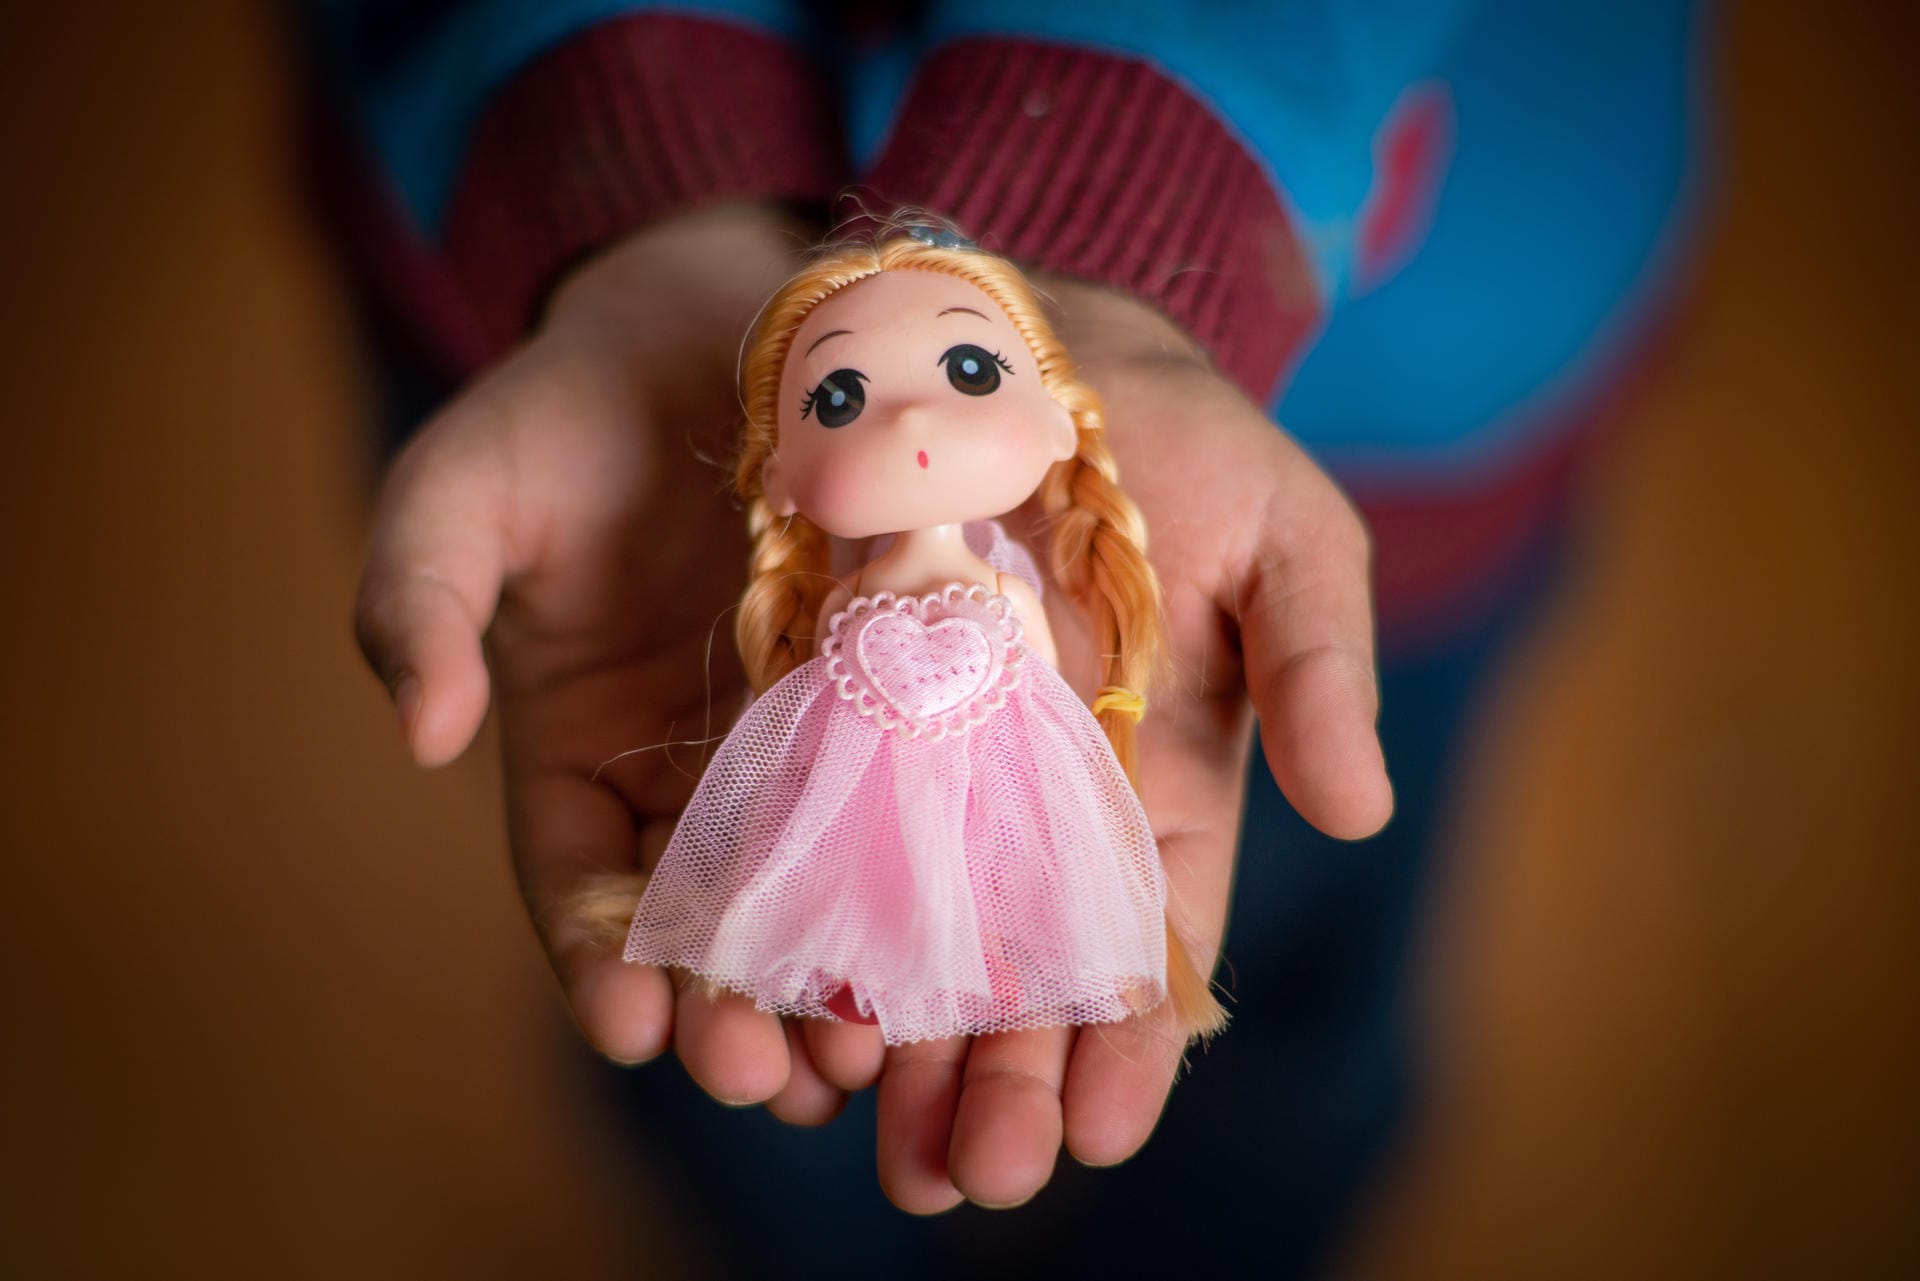 "Dieses Spielzeug ist aus Syrien. Ihr Name ist Farah." Yara erhielt die Puppe von ihrem Vater zum Geburtstag, erzählt die Zehnjährige Unicef.